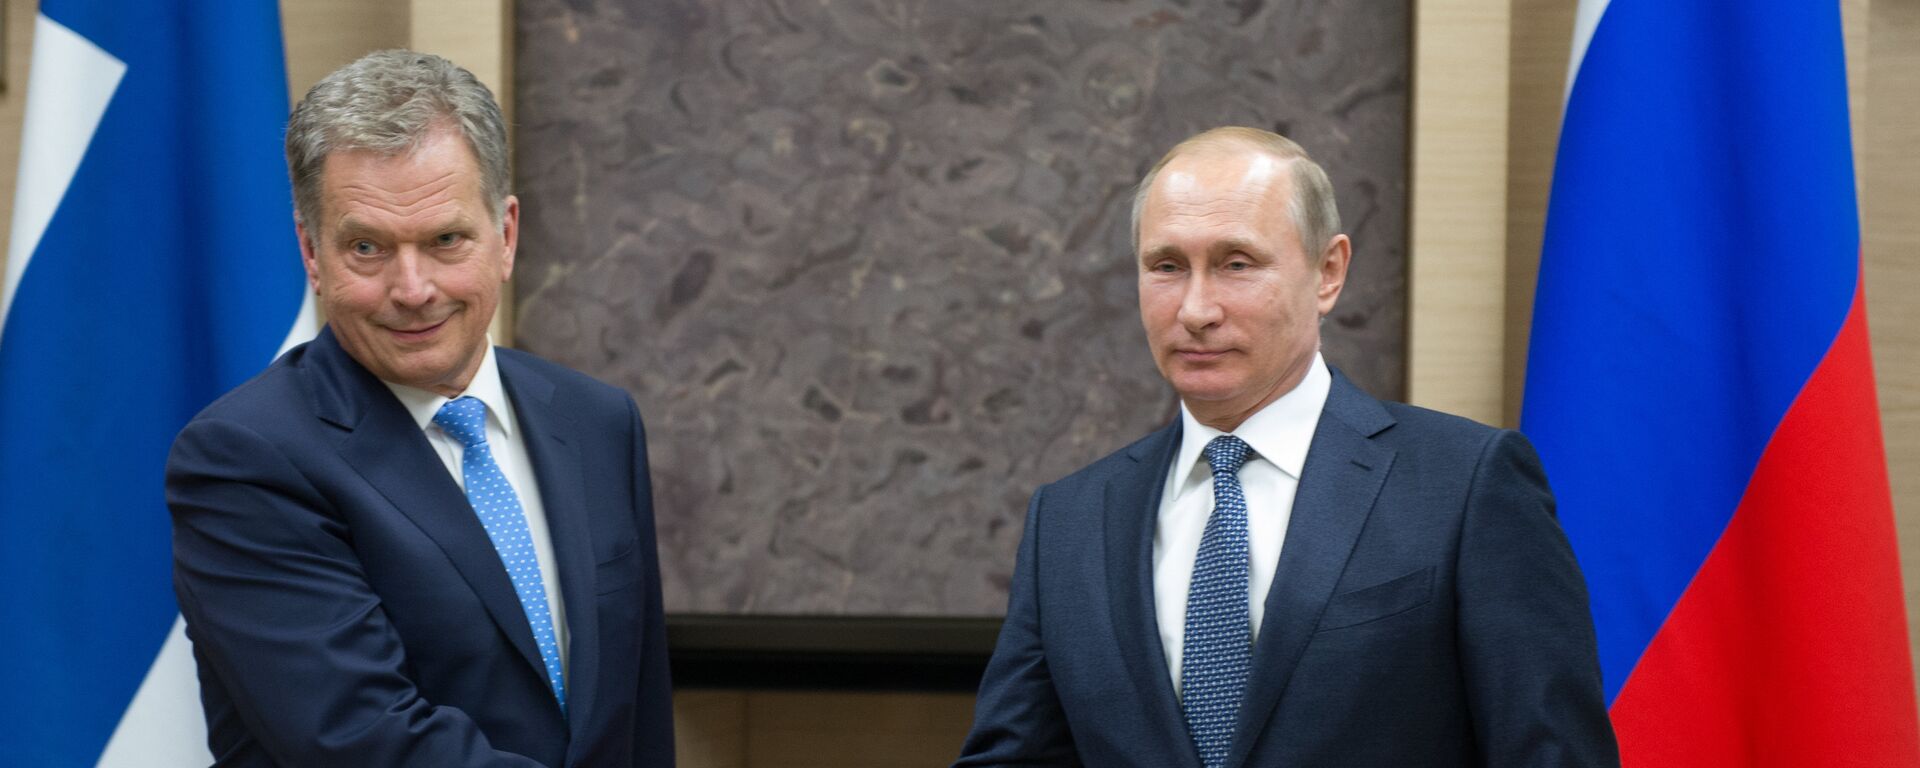 Президент России Владимир Путин (справа) и президент Финляндии Саули Ниинистё во время встречи. Архивное фото - Sputnik Латвия, 1920, 16.09.2018